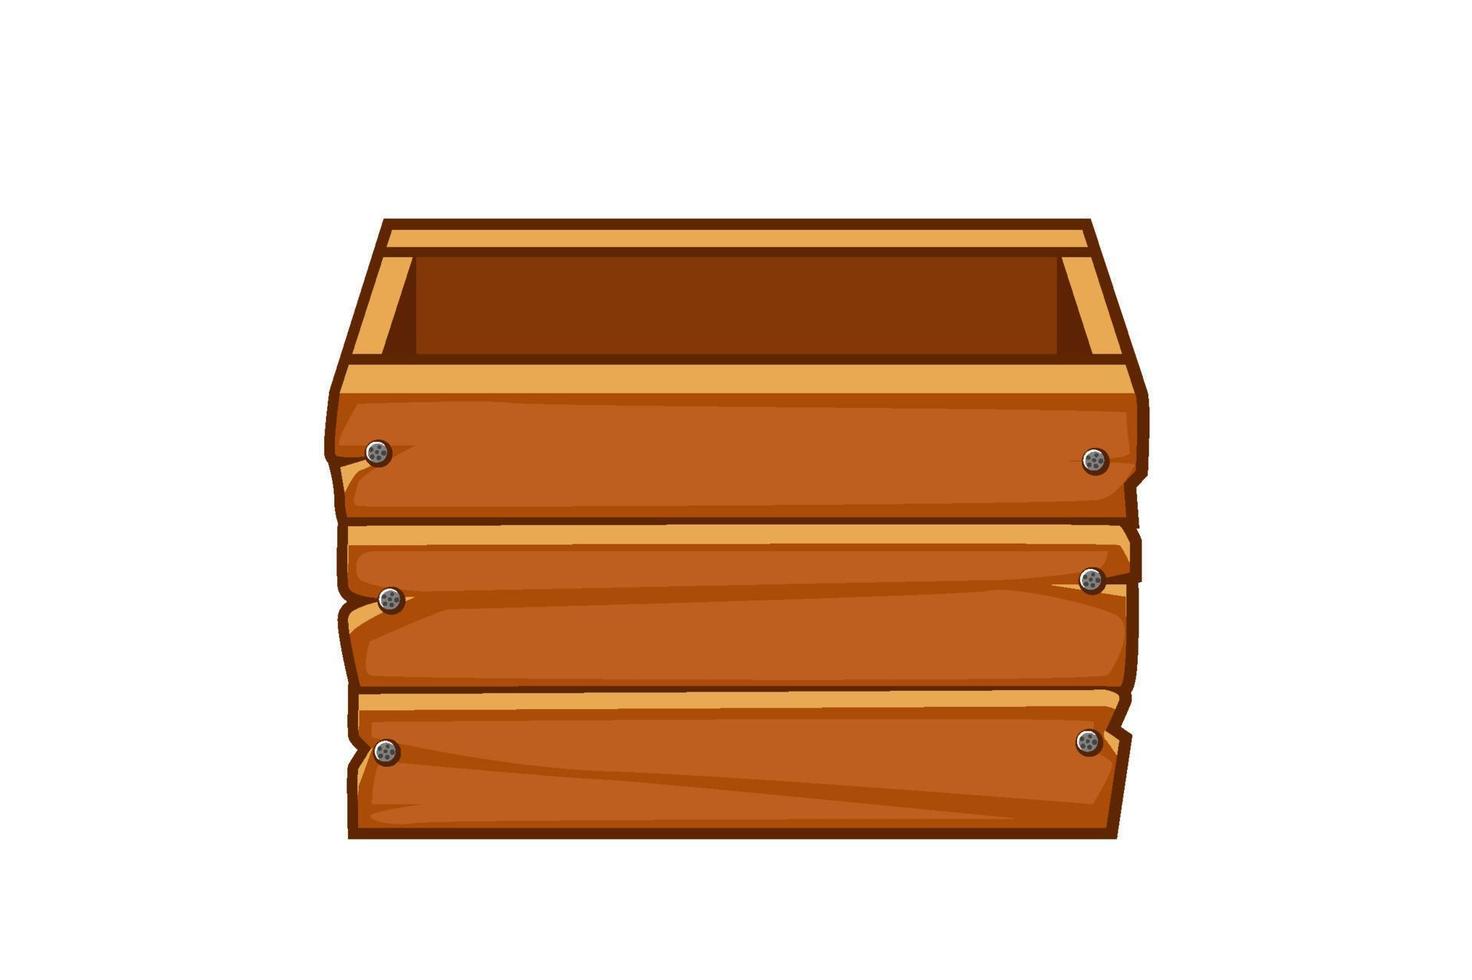 caja vieja de madera vacía para diseño gráfico. ilustración vectorial del contenedor de almacenamiento marrón para juegos de interfaz de usuario. vector